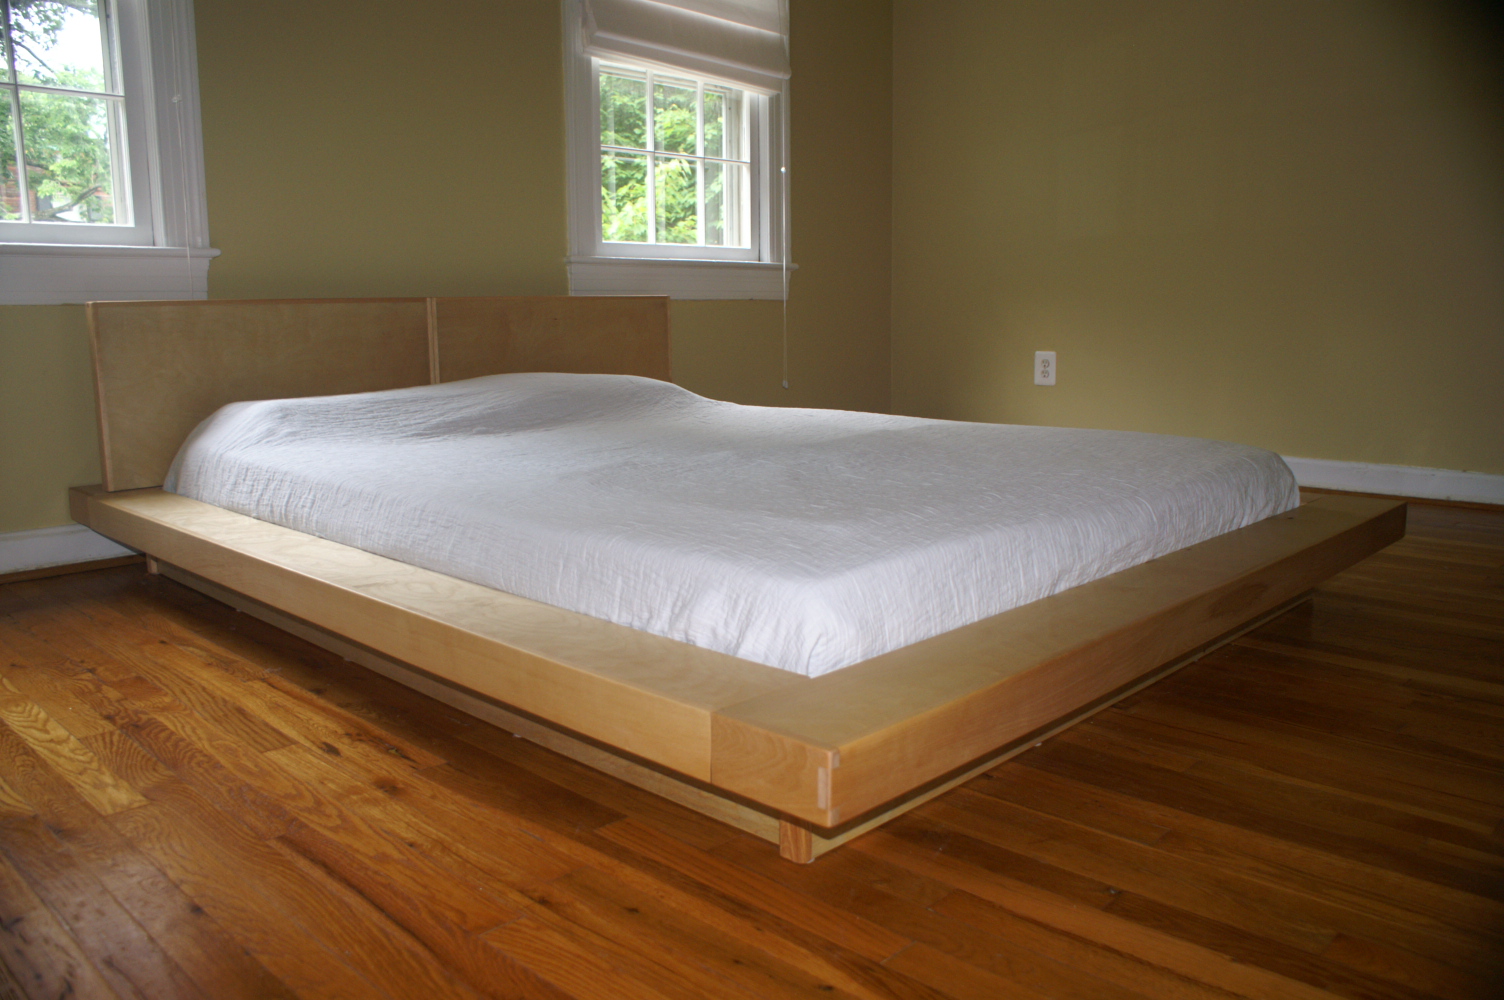 Build A Wooden Platform Bed